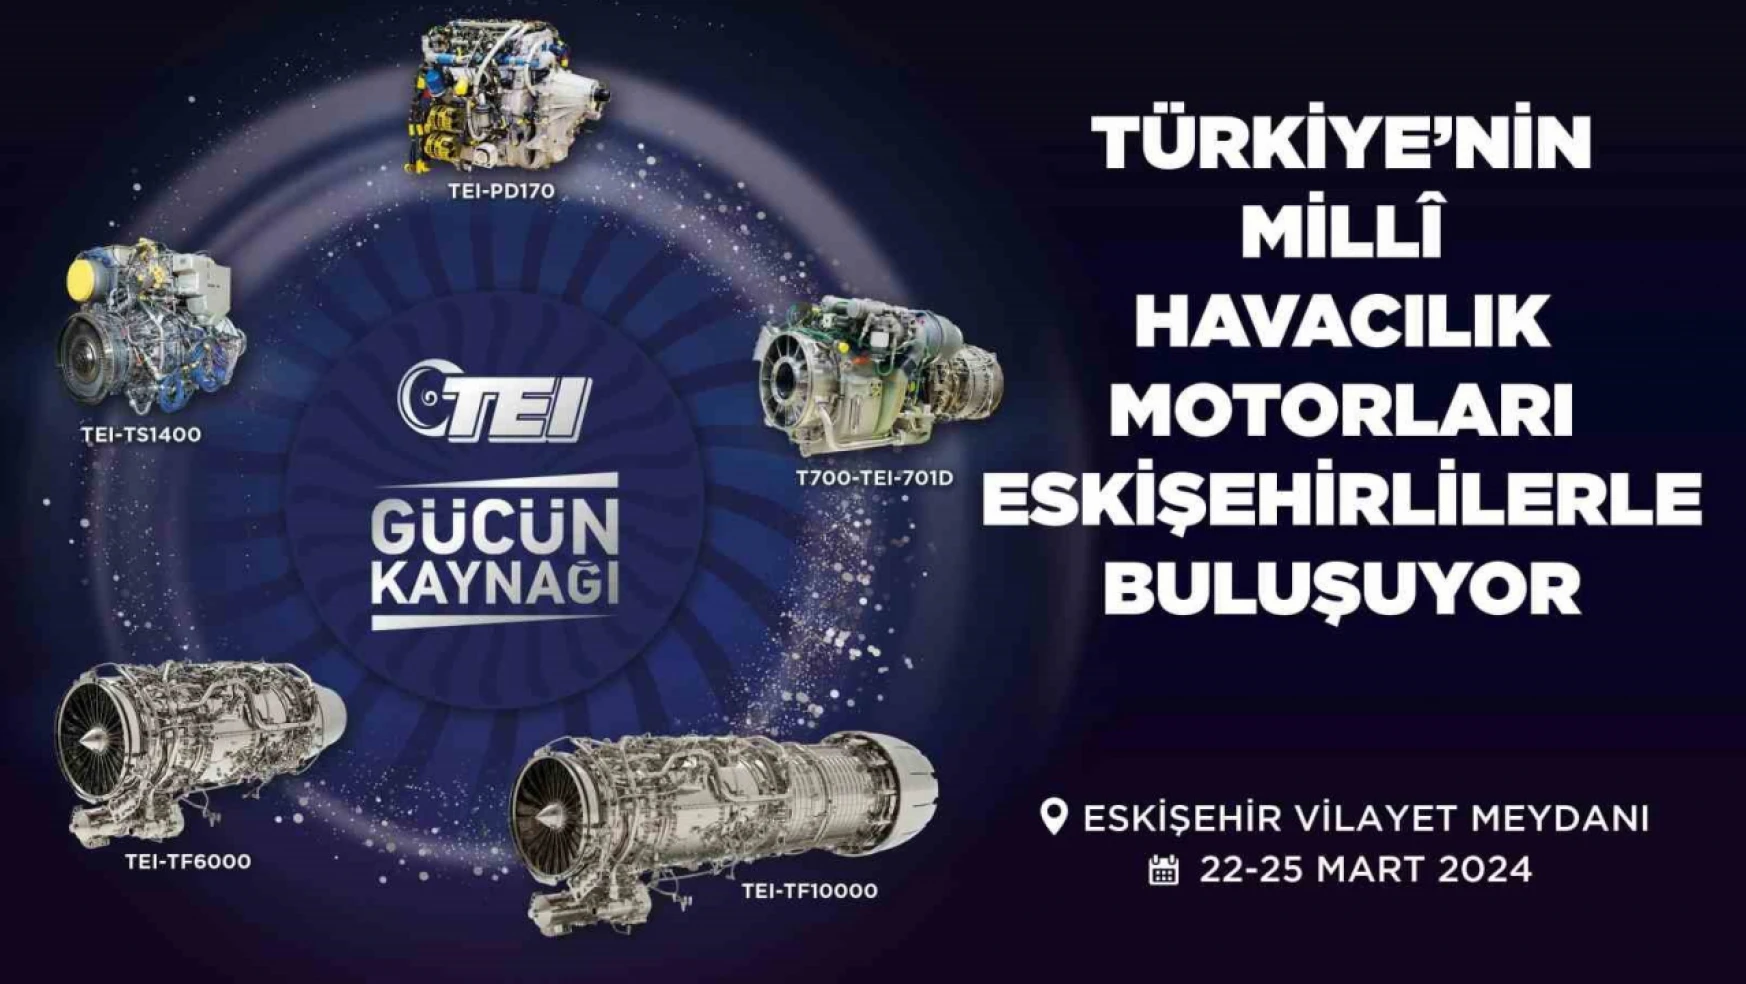 Türkiye'nin millî havacılık motorları Eskişehirlilerle buluşuyor